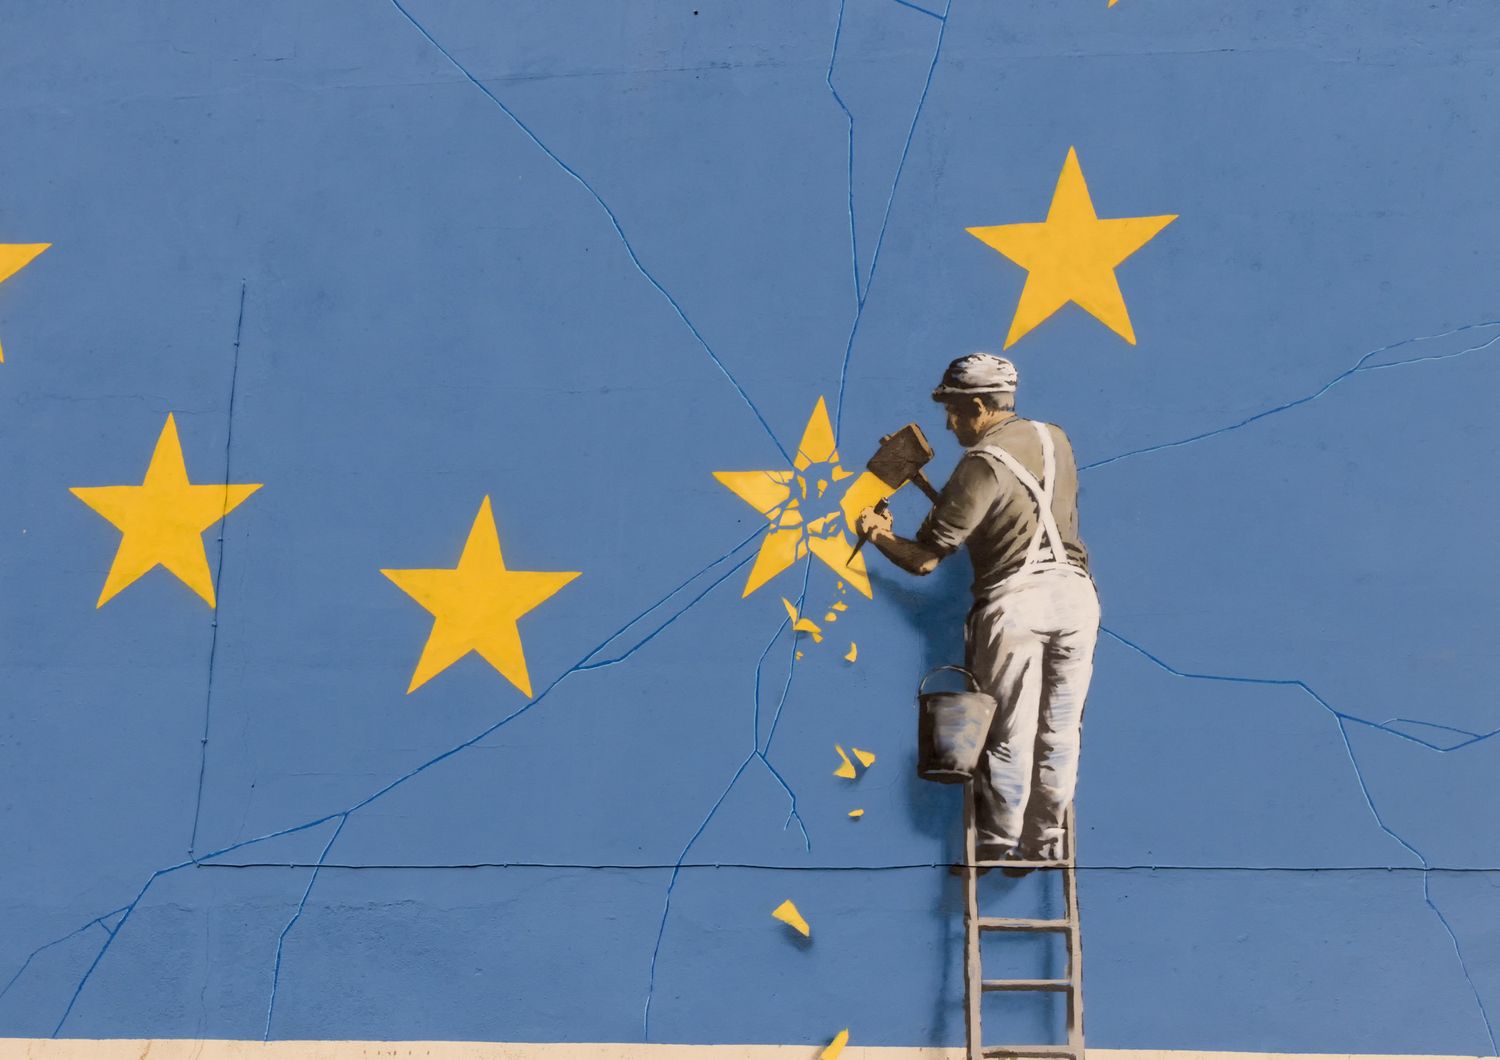 L'ultimo murales di Banksy &egrave; dedicato alla Brexit. L'opera &egrave; comparsa nella notte tra il 6 e il 7 maggio su un muro di Dover nel Regno Unito, su un palazzo nei pressi del terminal dei traghetti situato nell'estrema parte sud-orientale dell'isola (Afp)&nbsp;